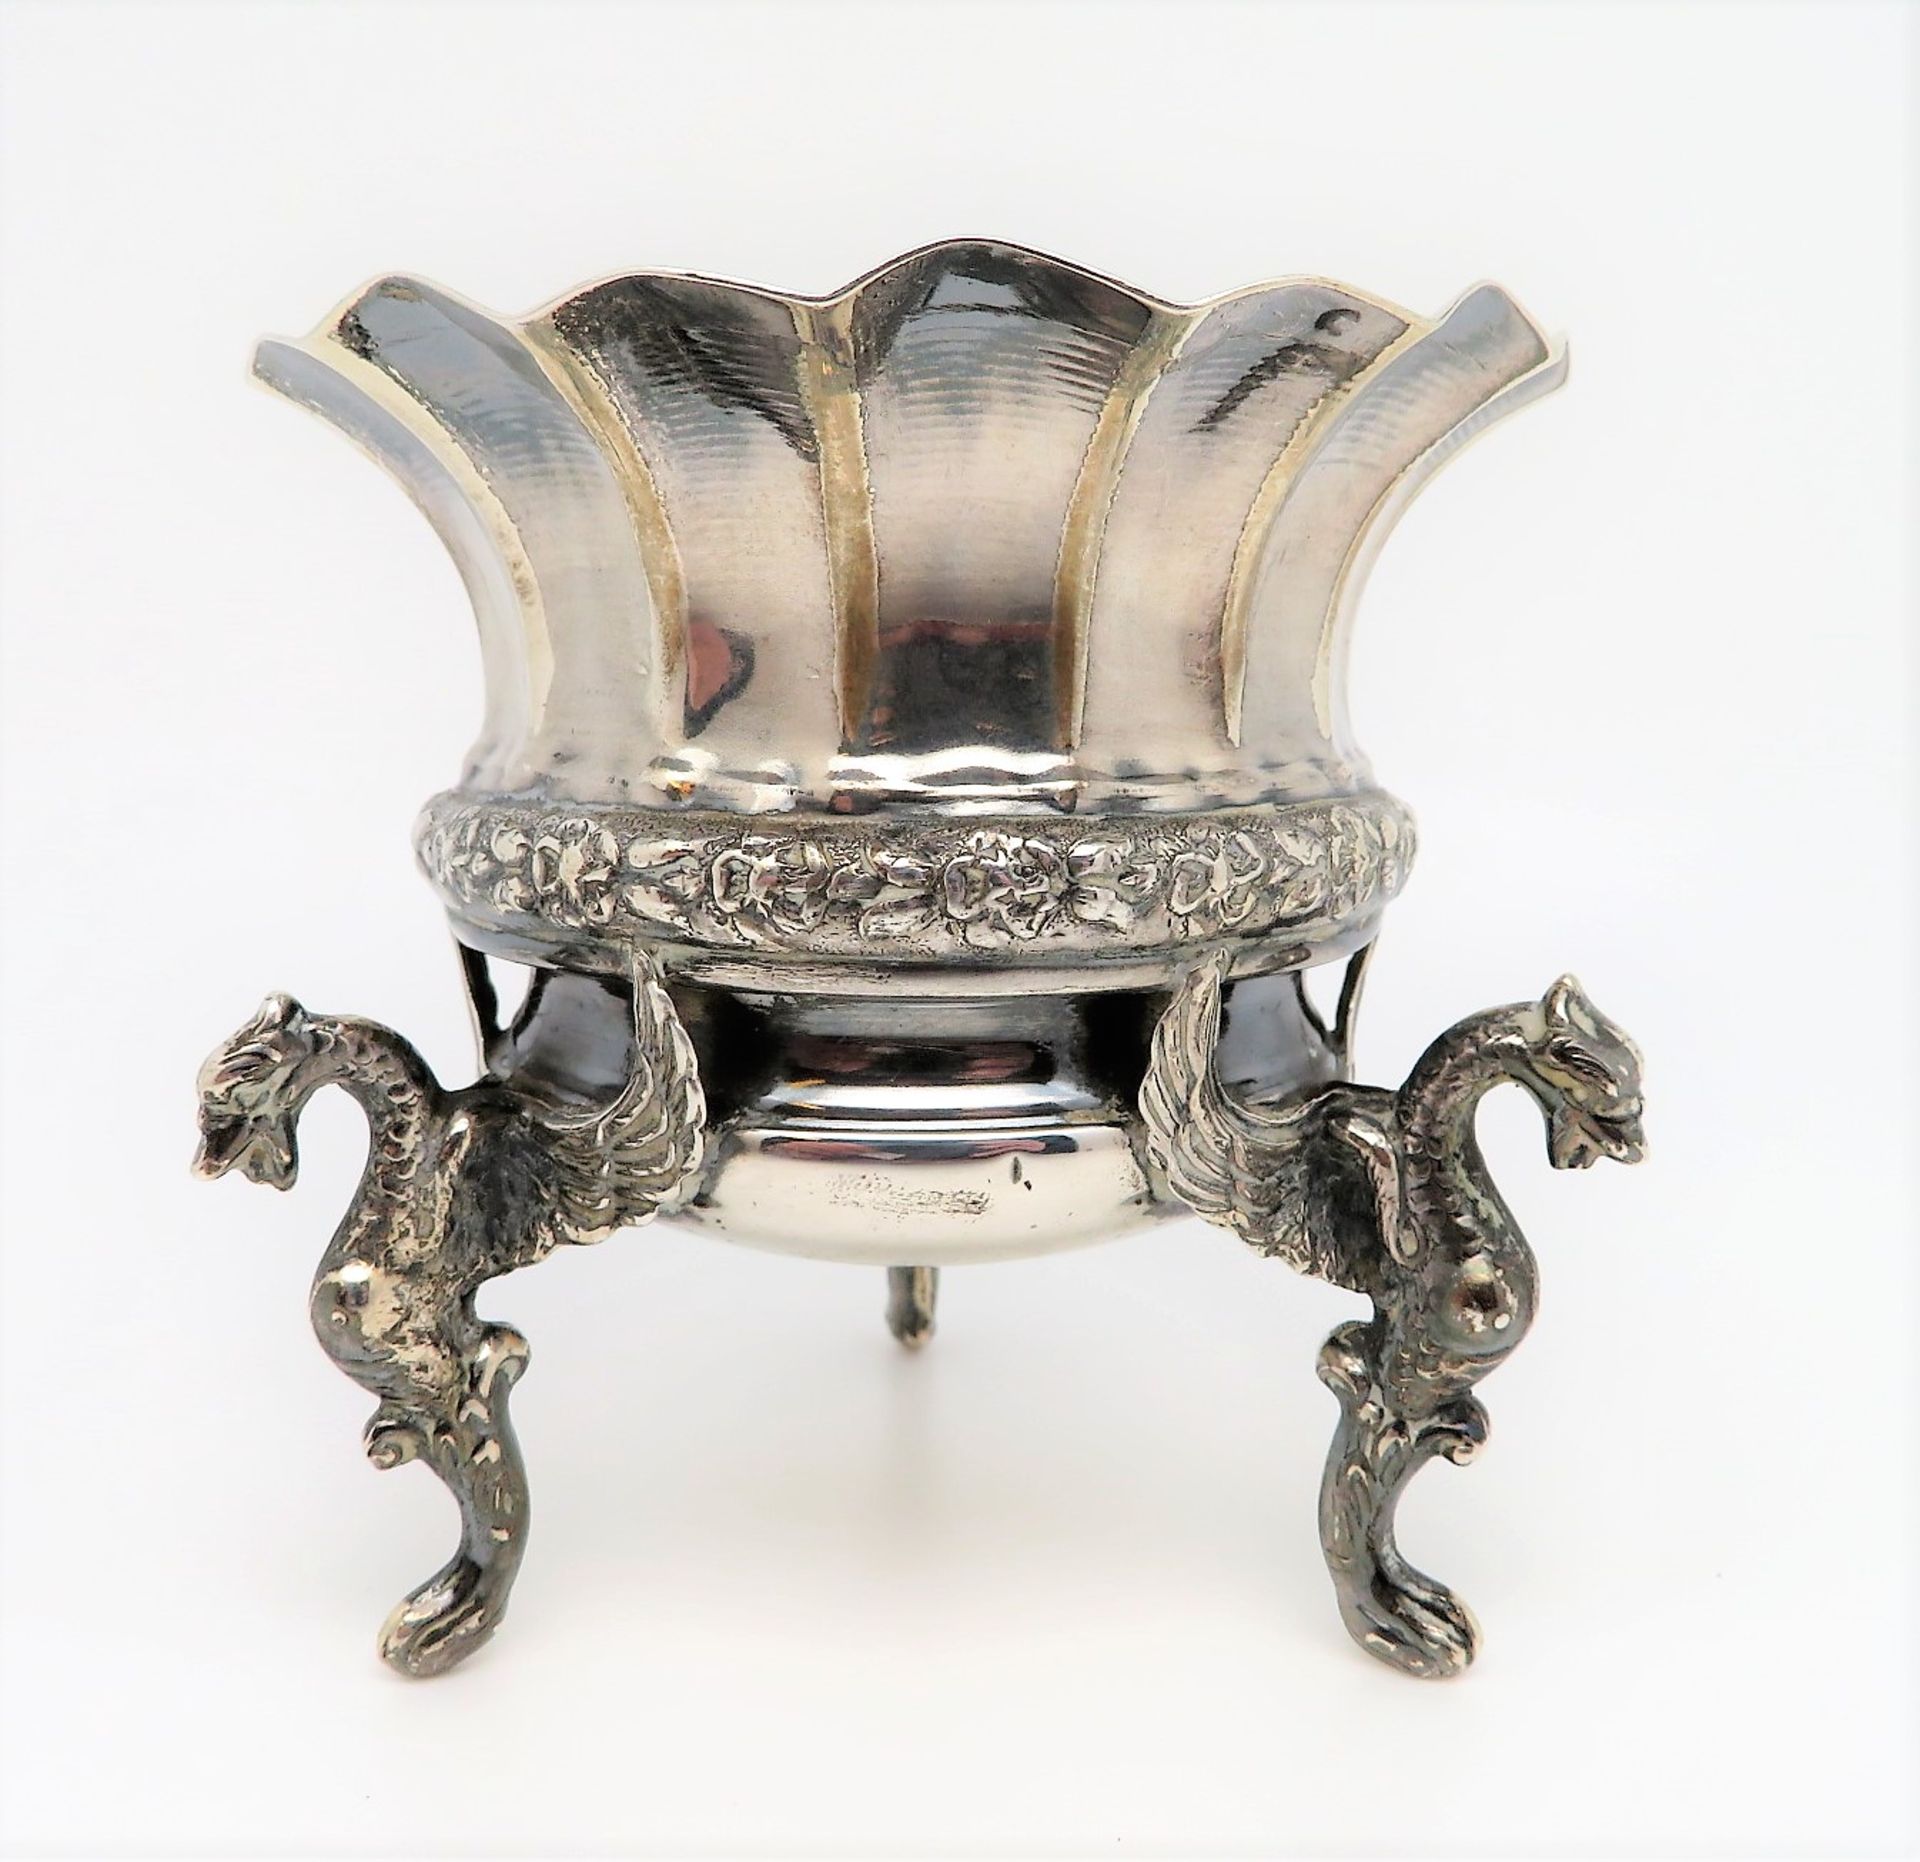 Schälchen, getragen durch drei geflügelte Drachen, 835er Silber, gepunzt, 80 g, h 8,5 cm, d 8,5 cm.